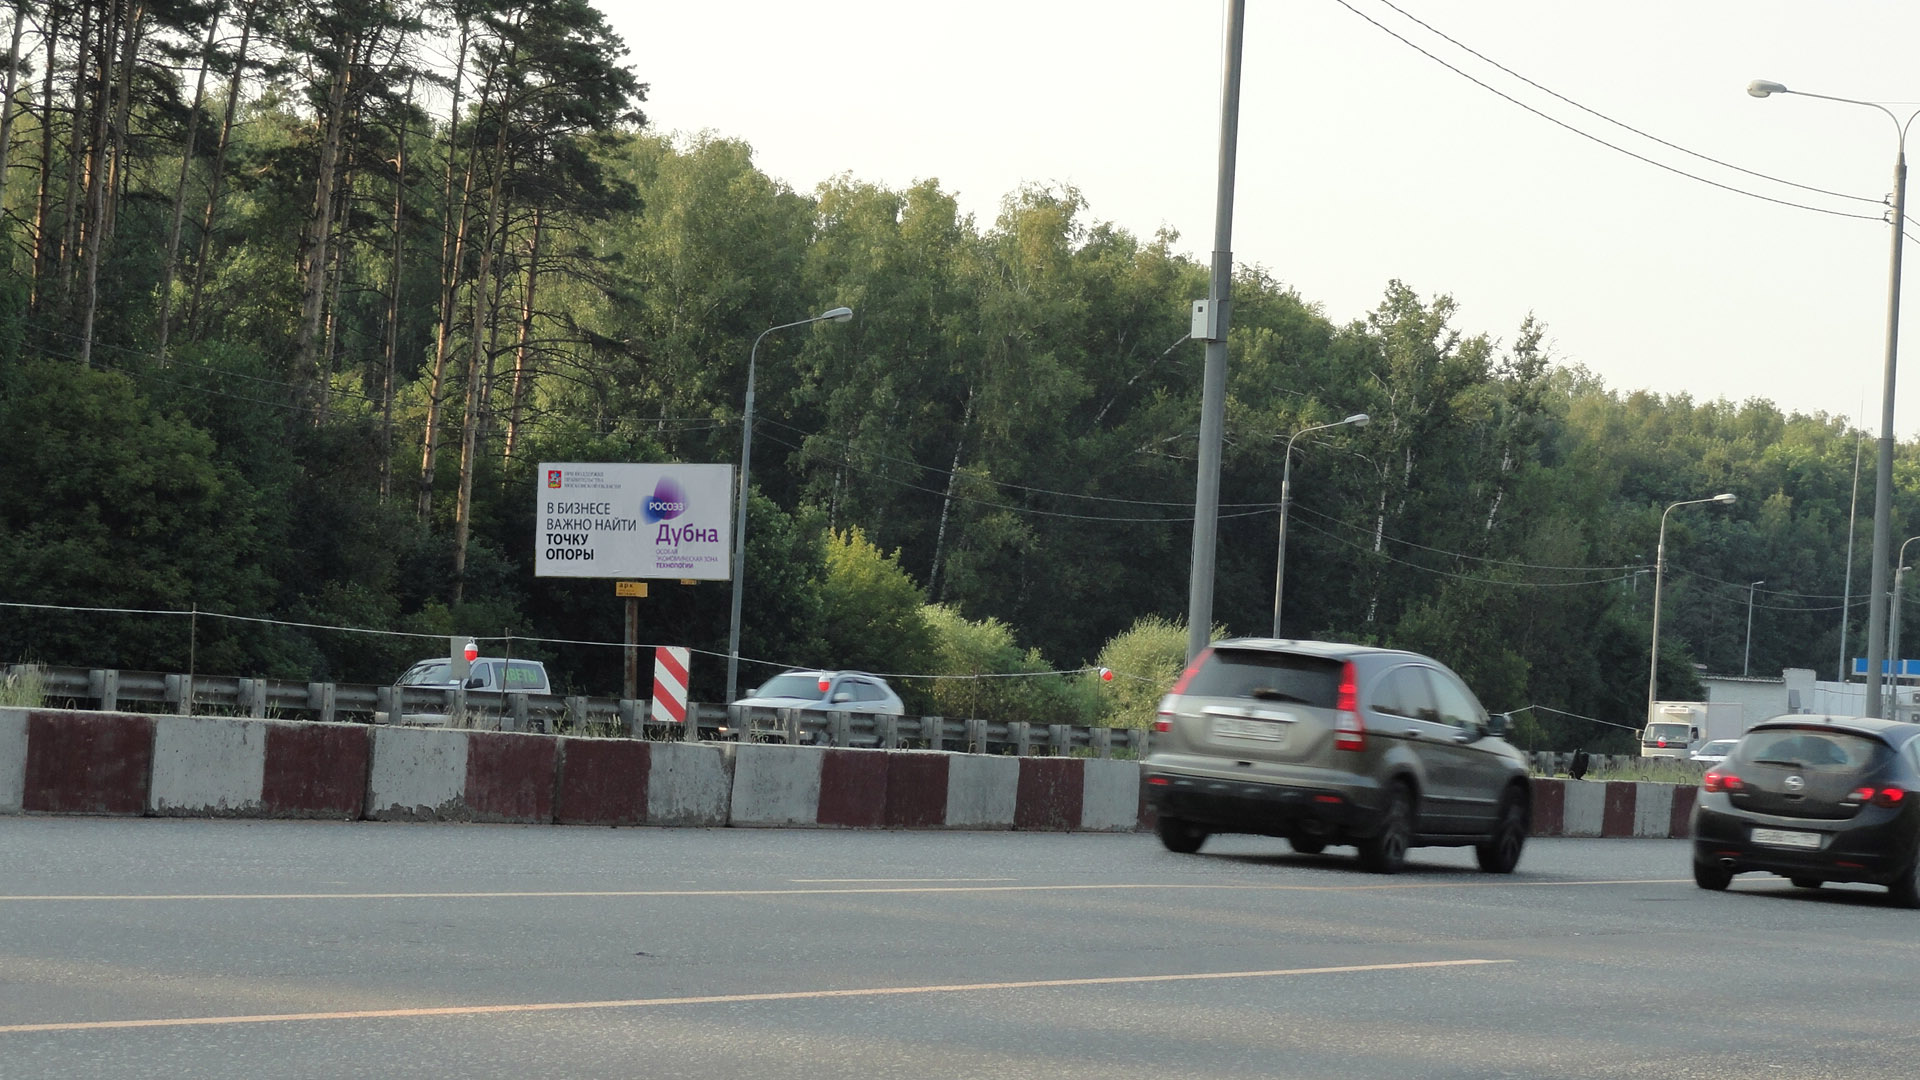 Симферопольское ш., М-2 «Крым» 37,86 км, (16,96 км от МКАД), справа, г.Подольск б